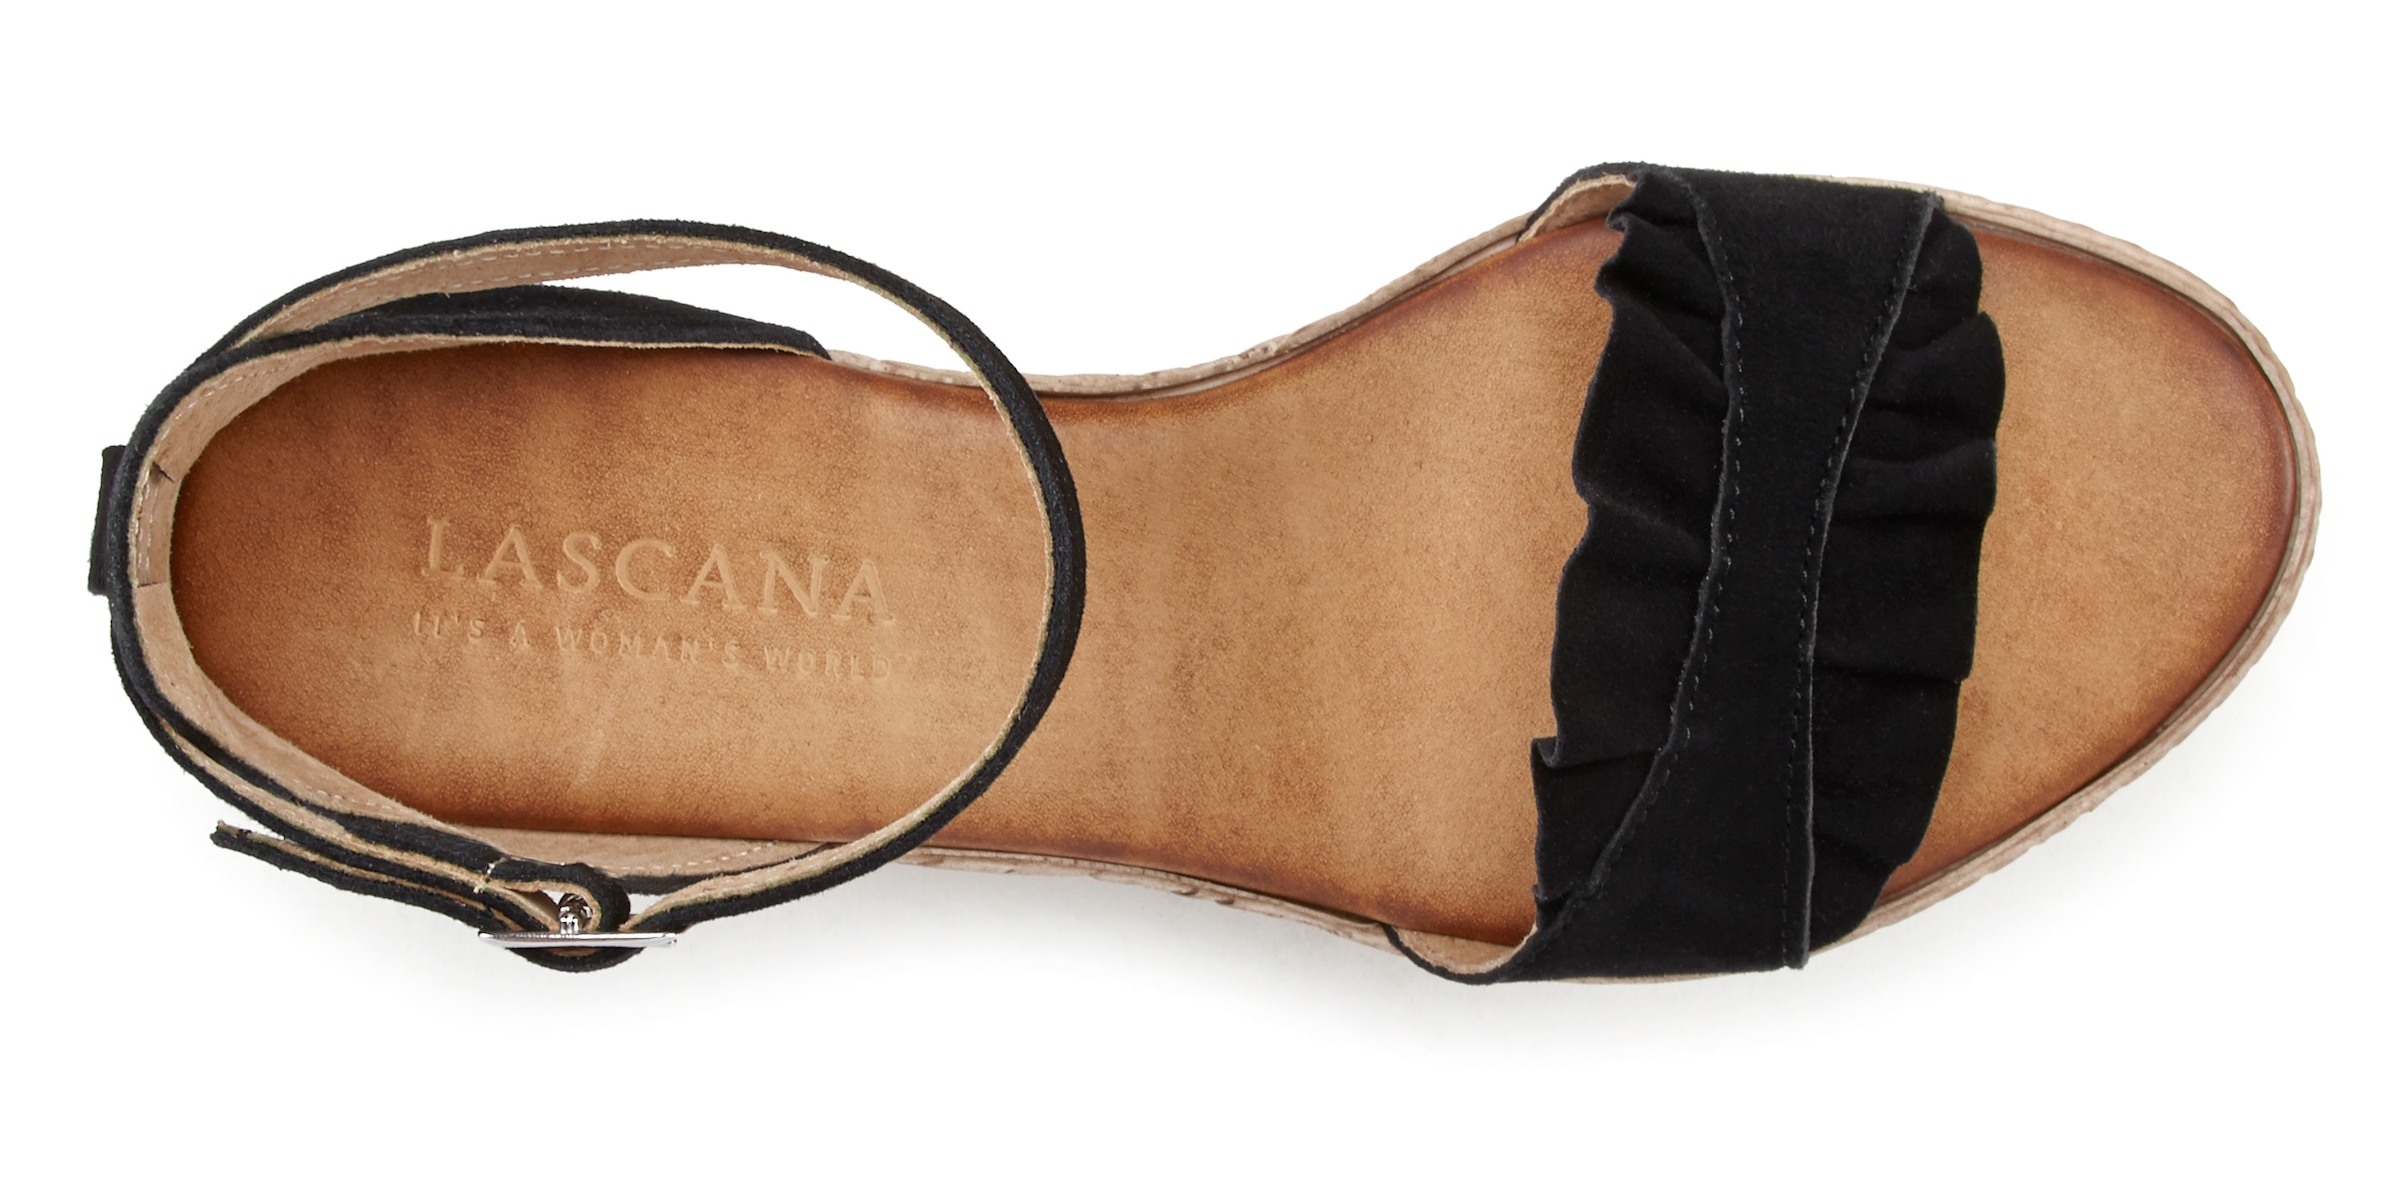 LASCANA Sandalette, Sandale, Sommerschuh aus Leder mit Keilabsatz